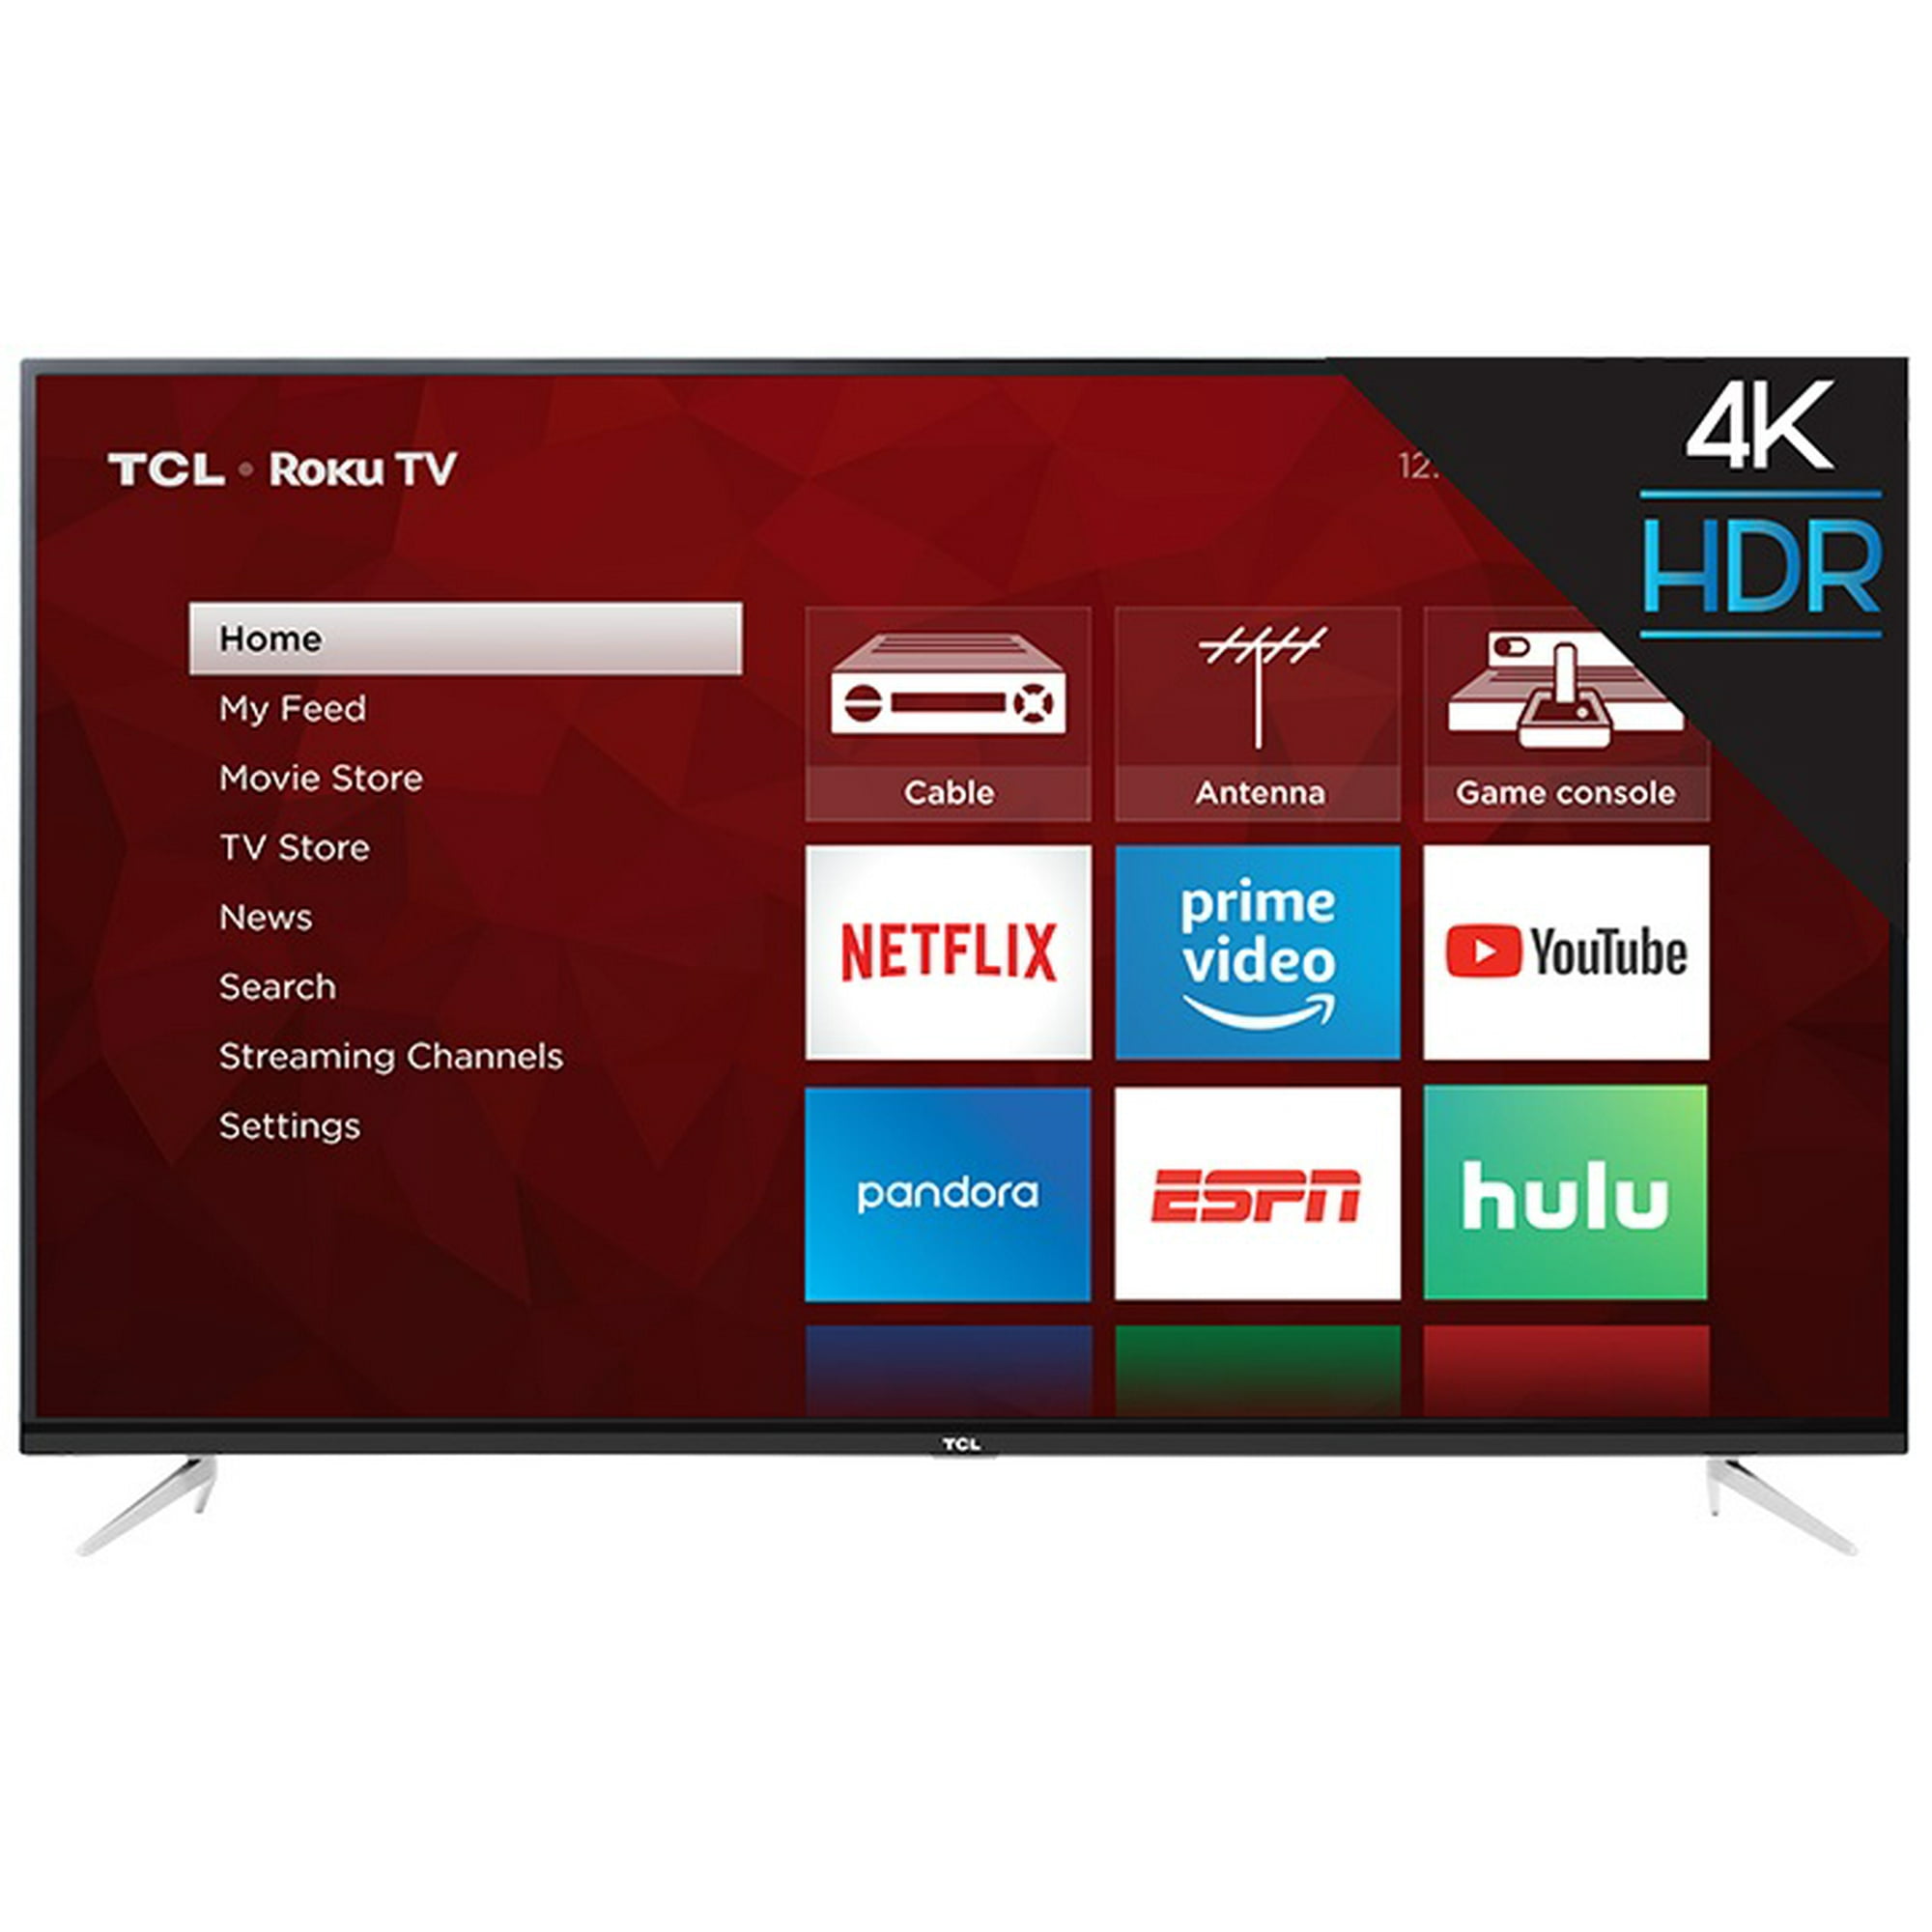 Pantalla TCL 40 FHD 2K Roku TV 40S310R Smart TV